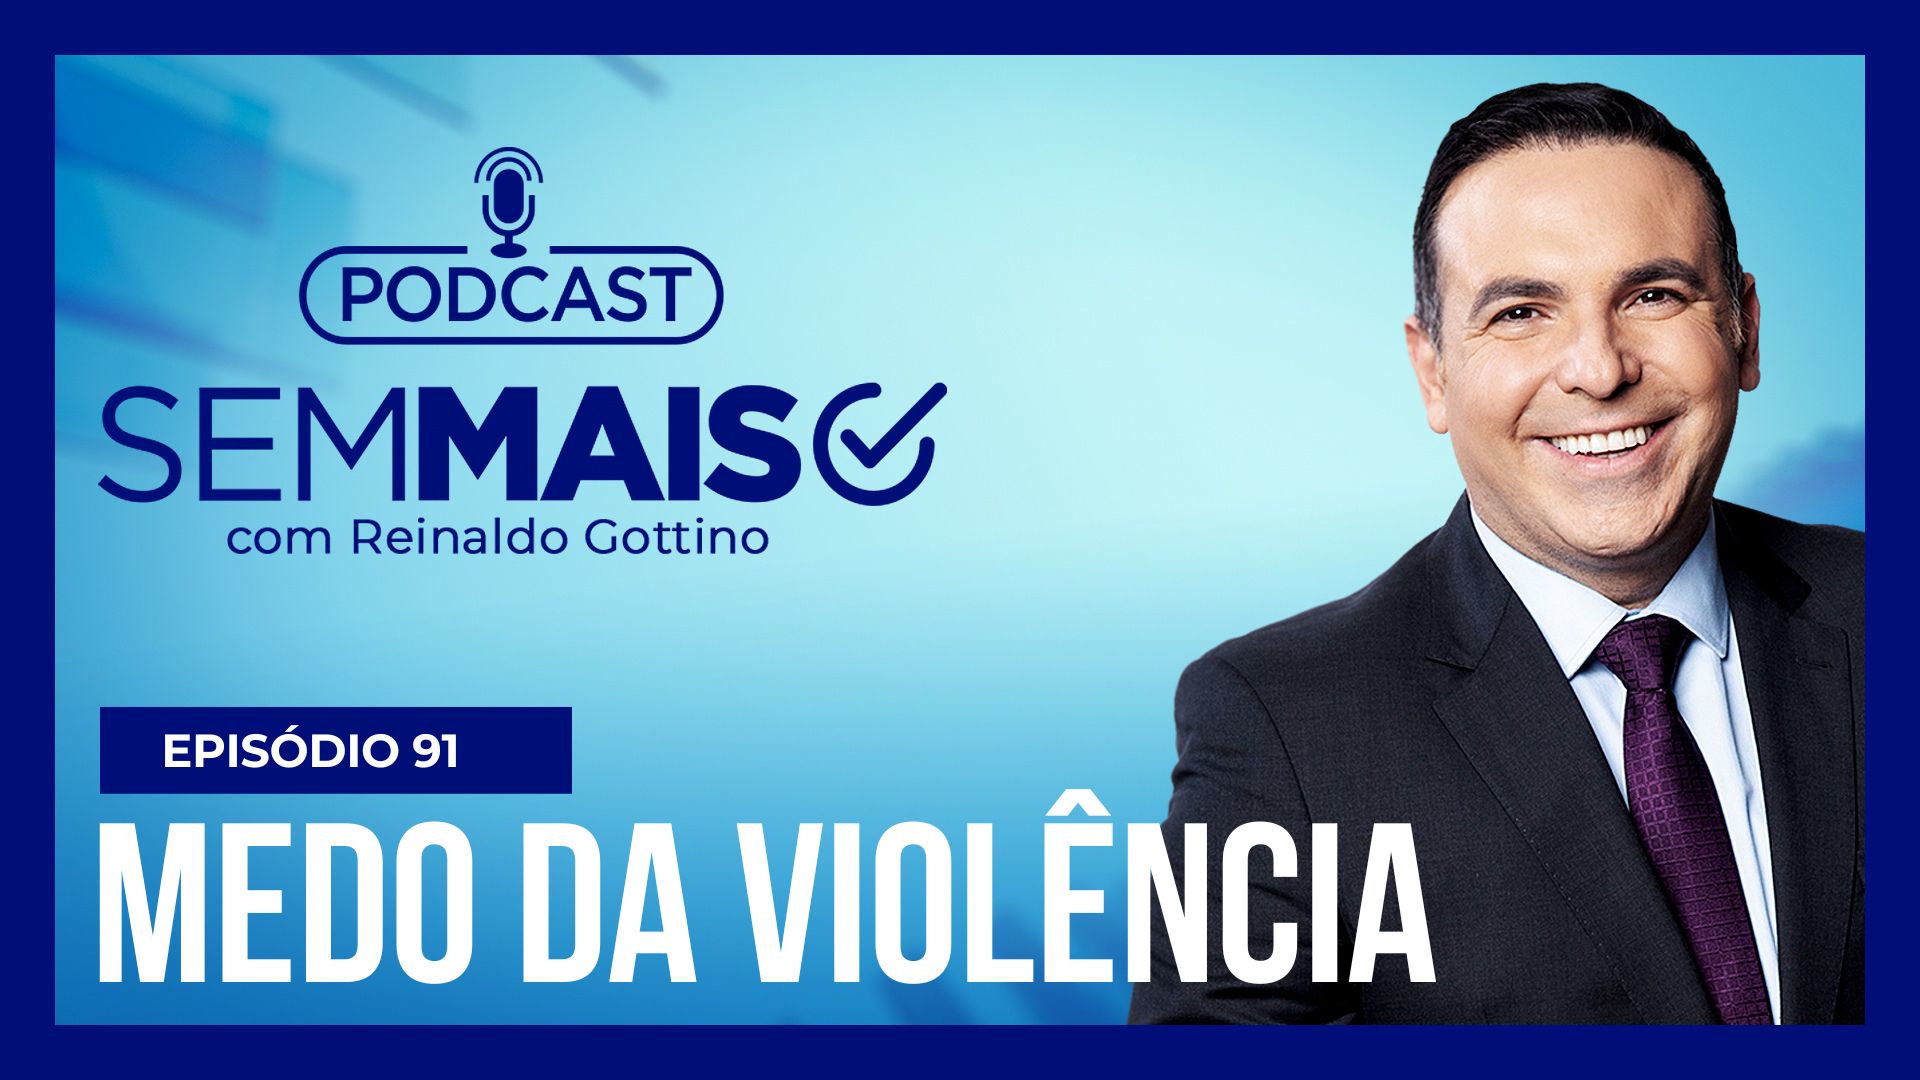 Vídeo: Podcast Sem Mais : brasileiros mudam comportamento com medo da violência